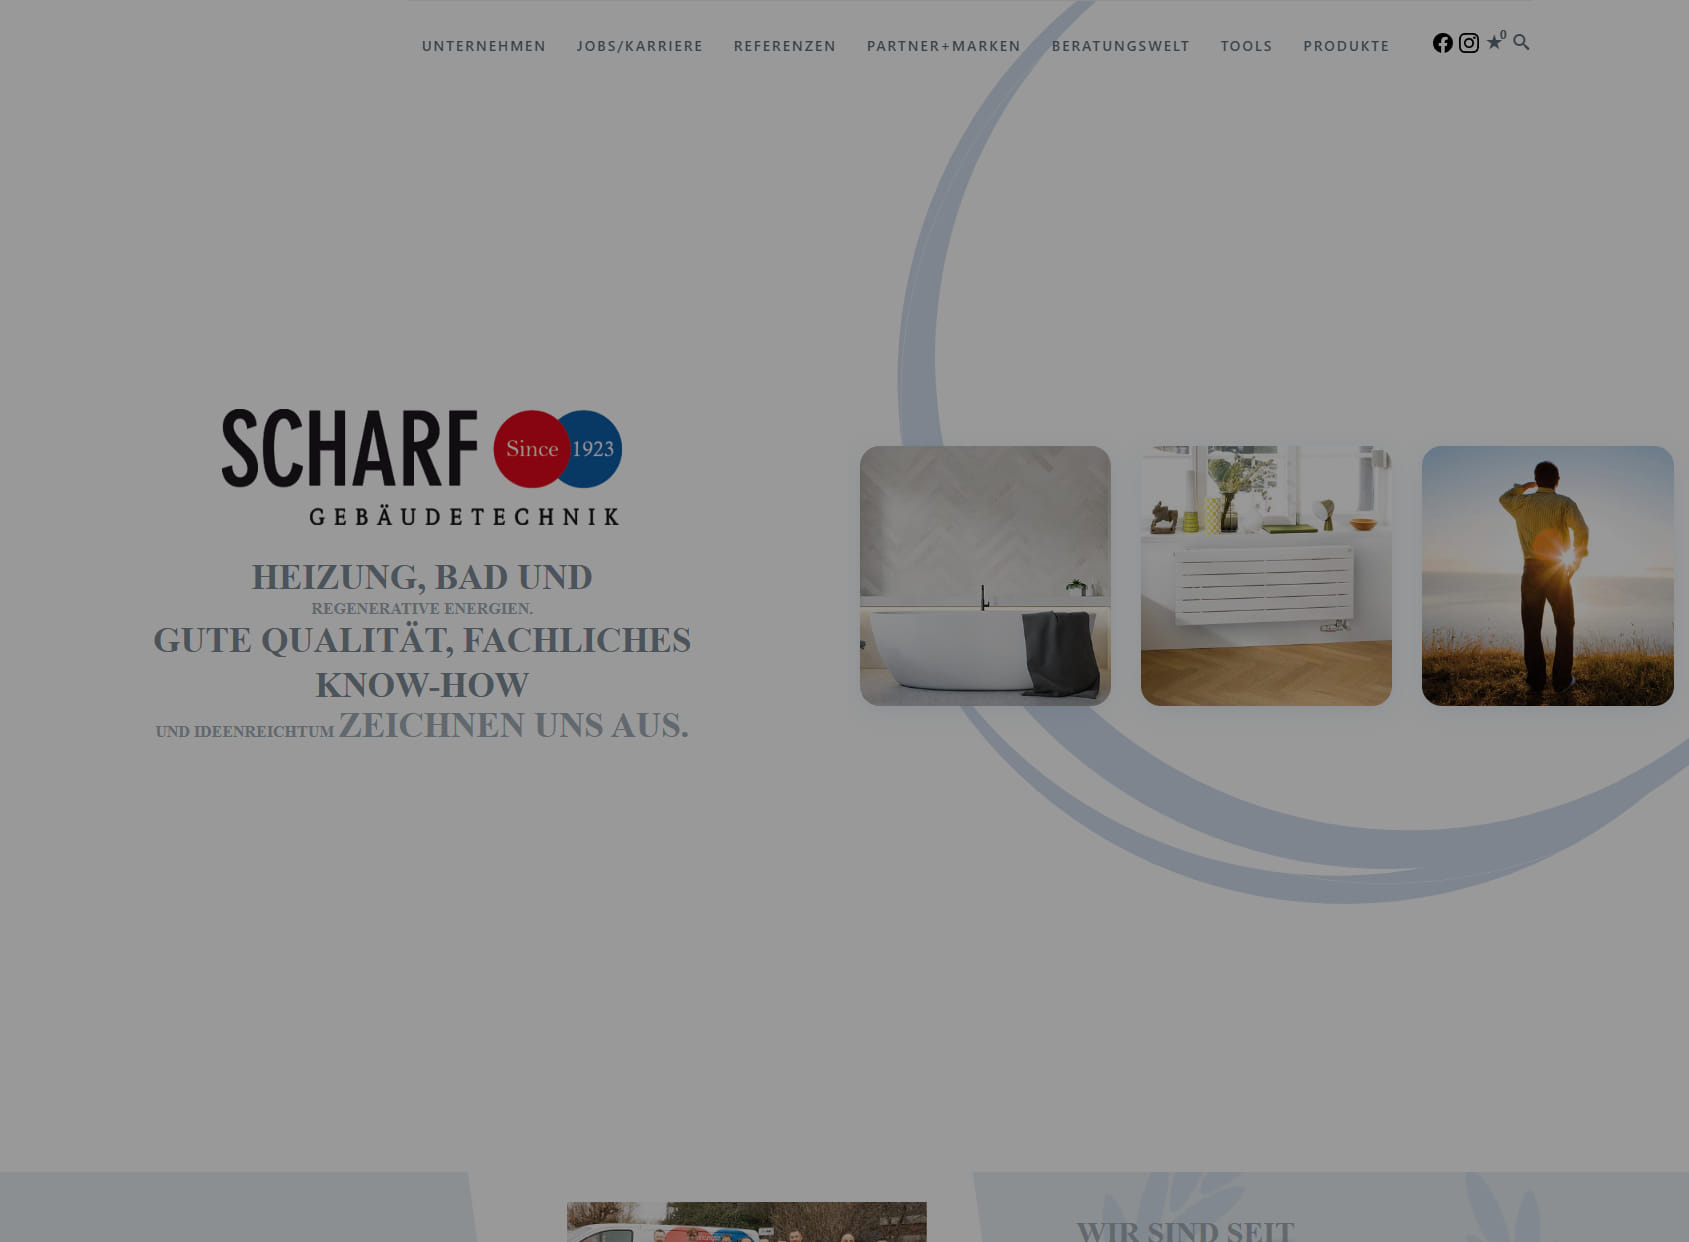 Scharf Gebäudetechnik GmbH & Co. KG